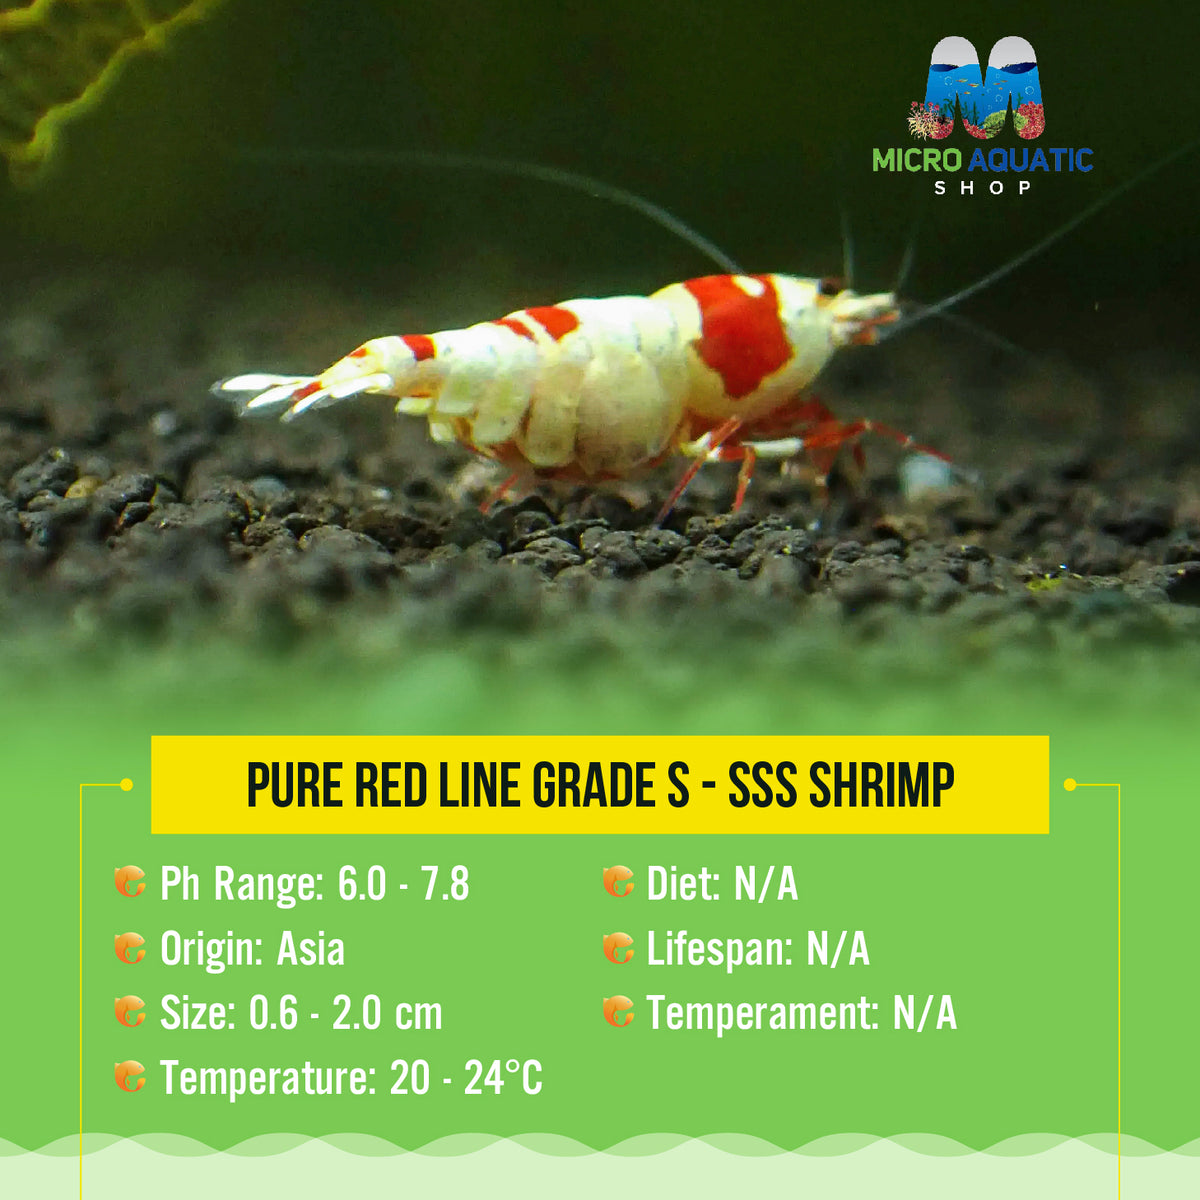 Pure Red Line Grade S - SSS Shrimp